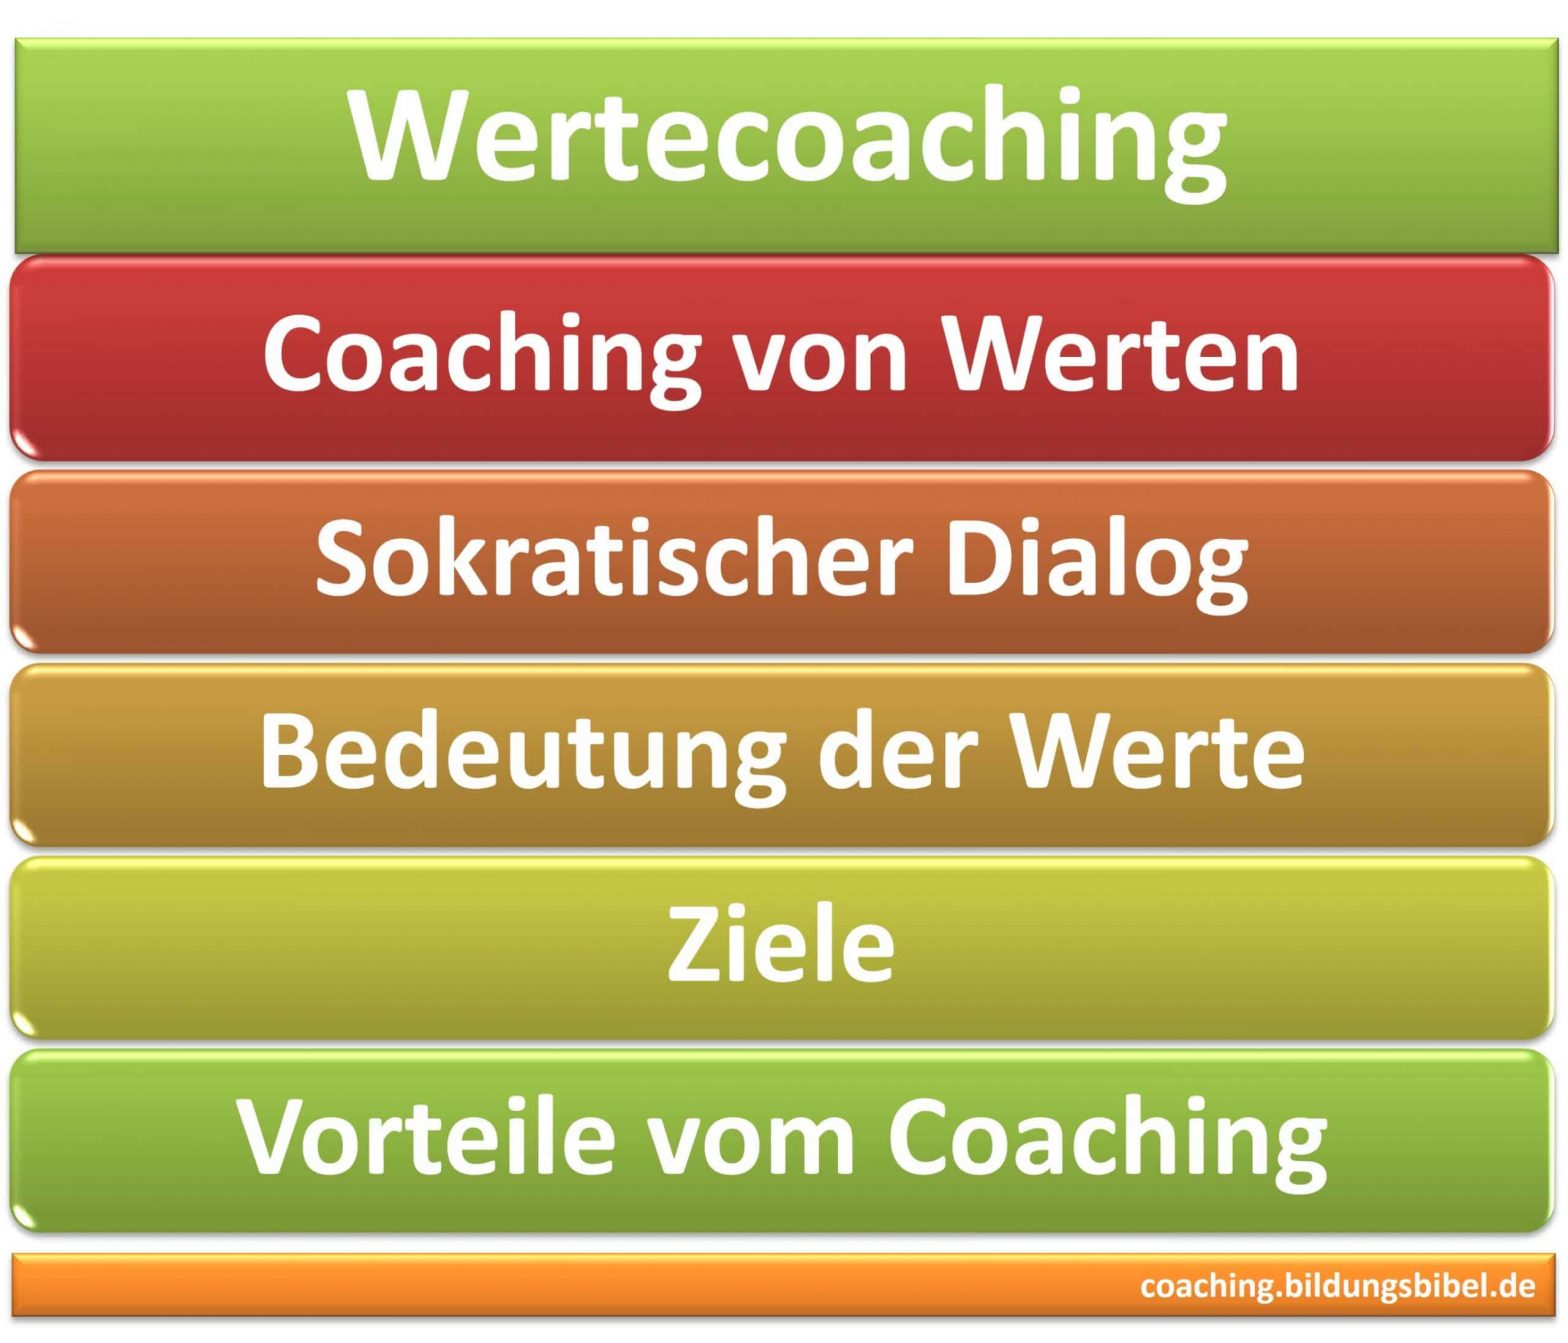 Wertecoaching, sokratischer Dialog, Bedeutung der Werte und Ziele für Menschen, Vorteile vom Coaching im beruflichen Bereich.